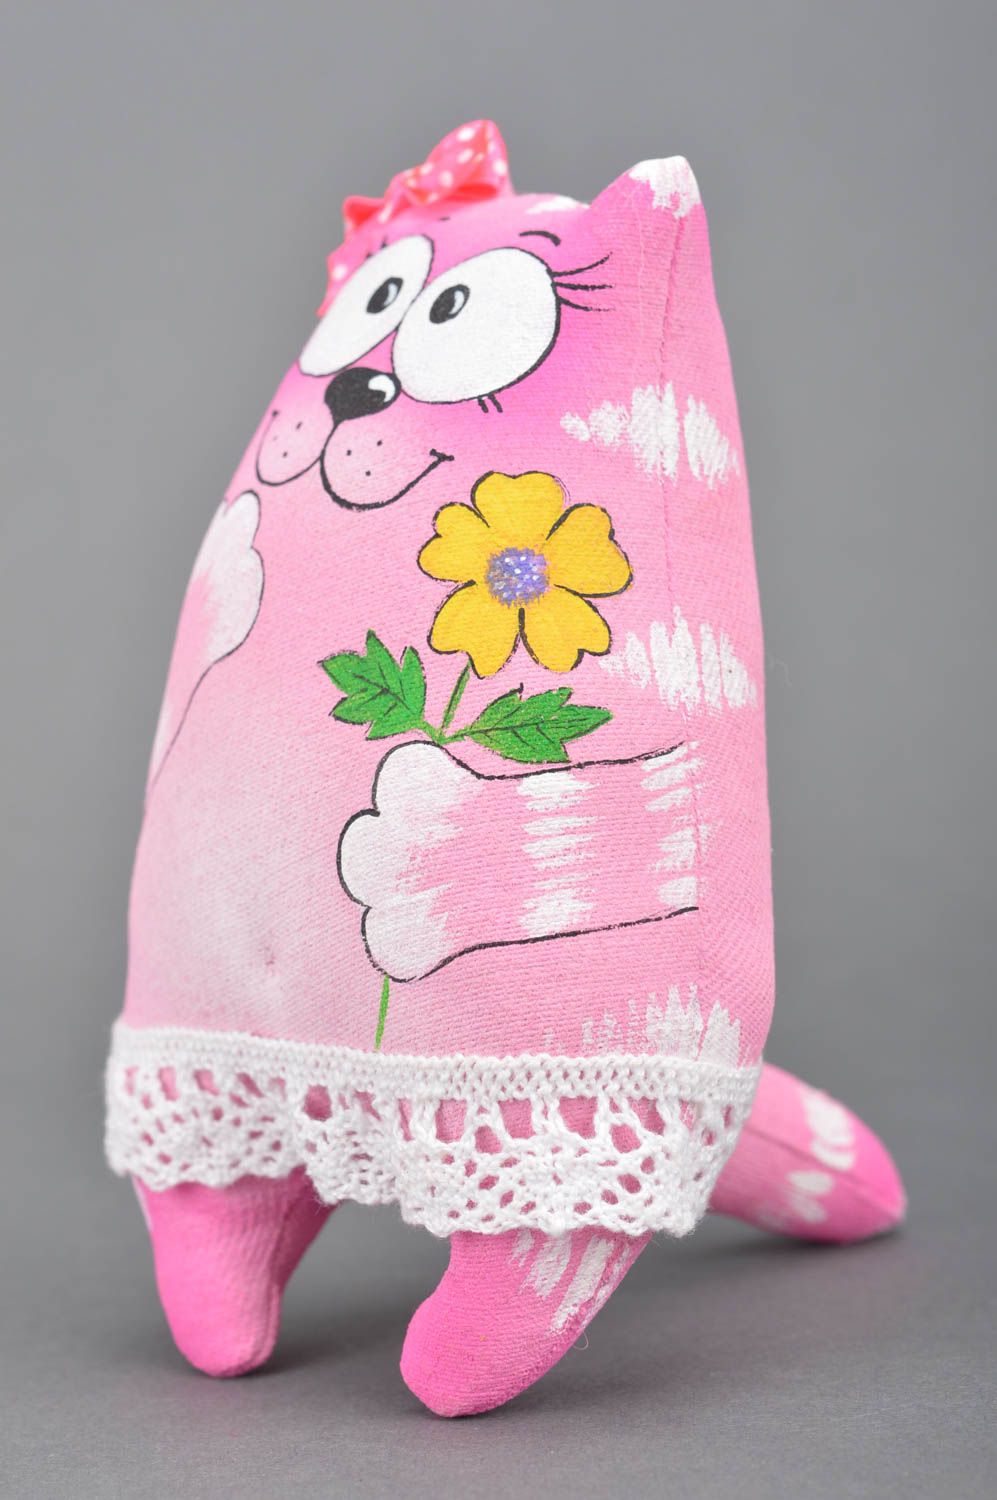 Jouet mou chat rose en tissu de coton peint de couleurs acryliques fait main photo 2